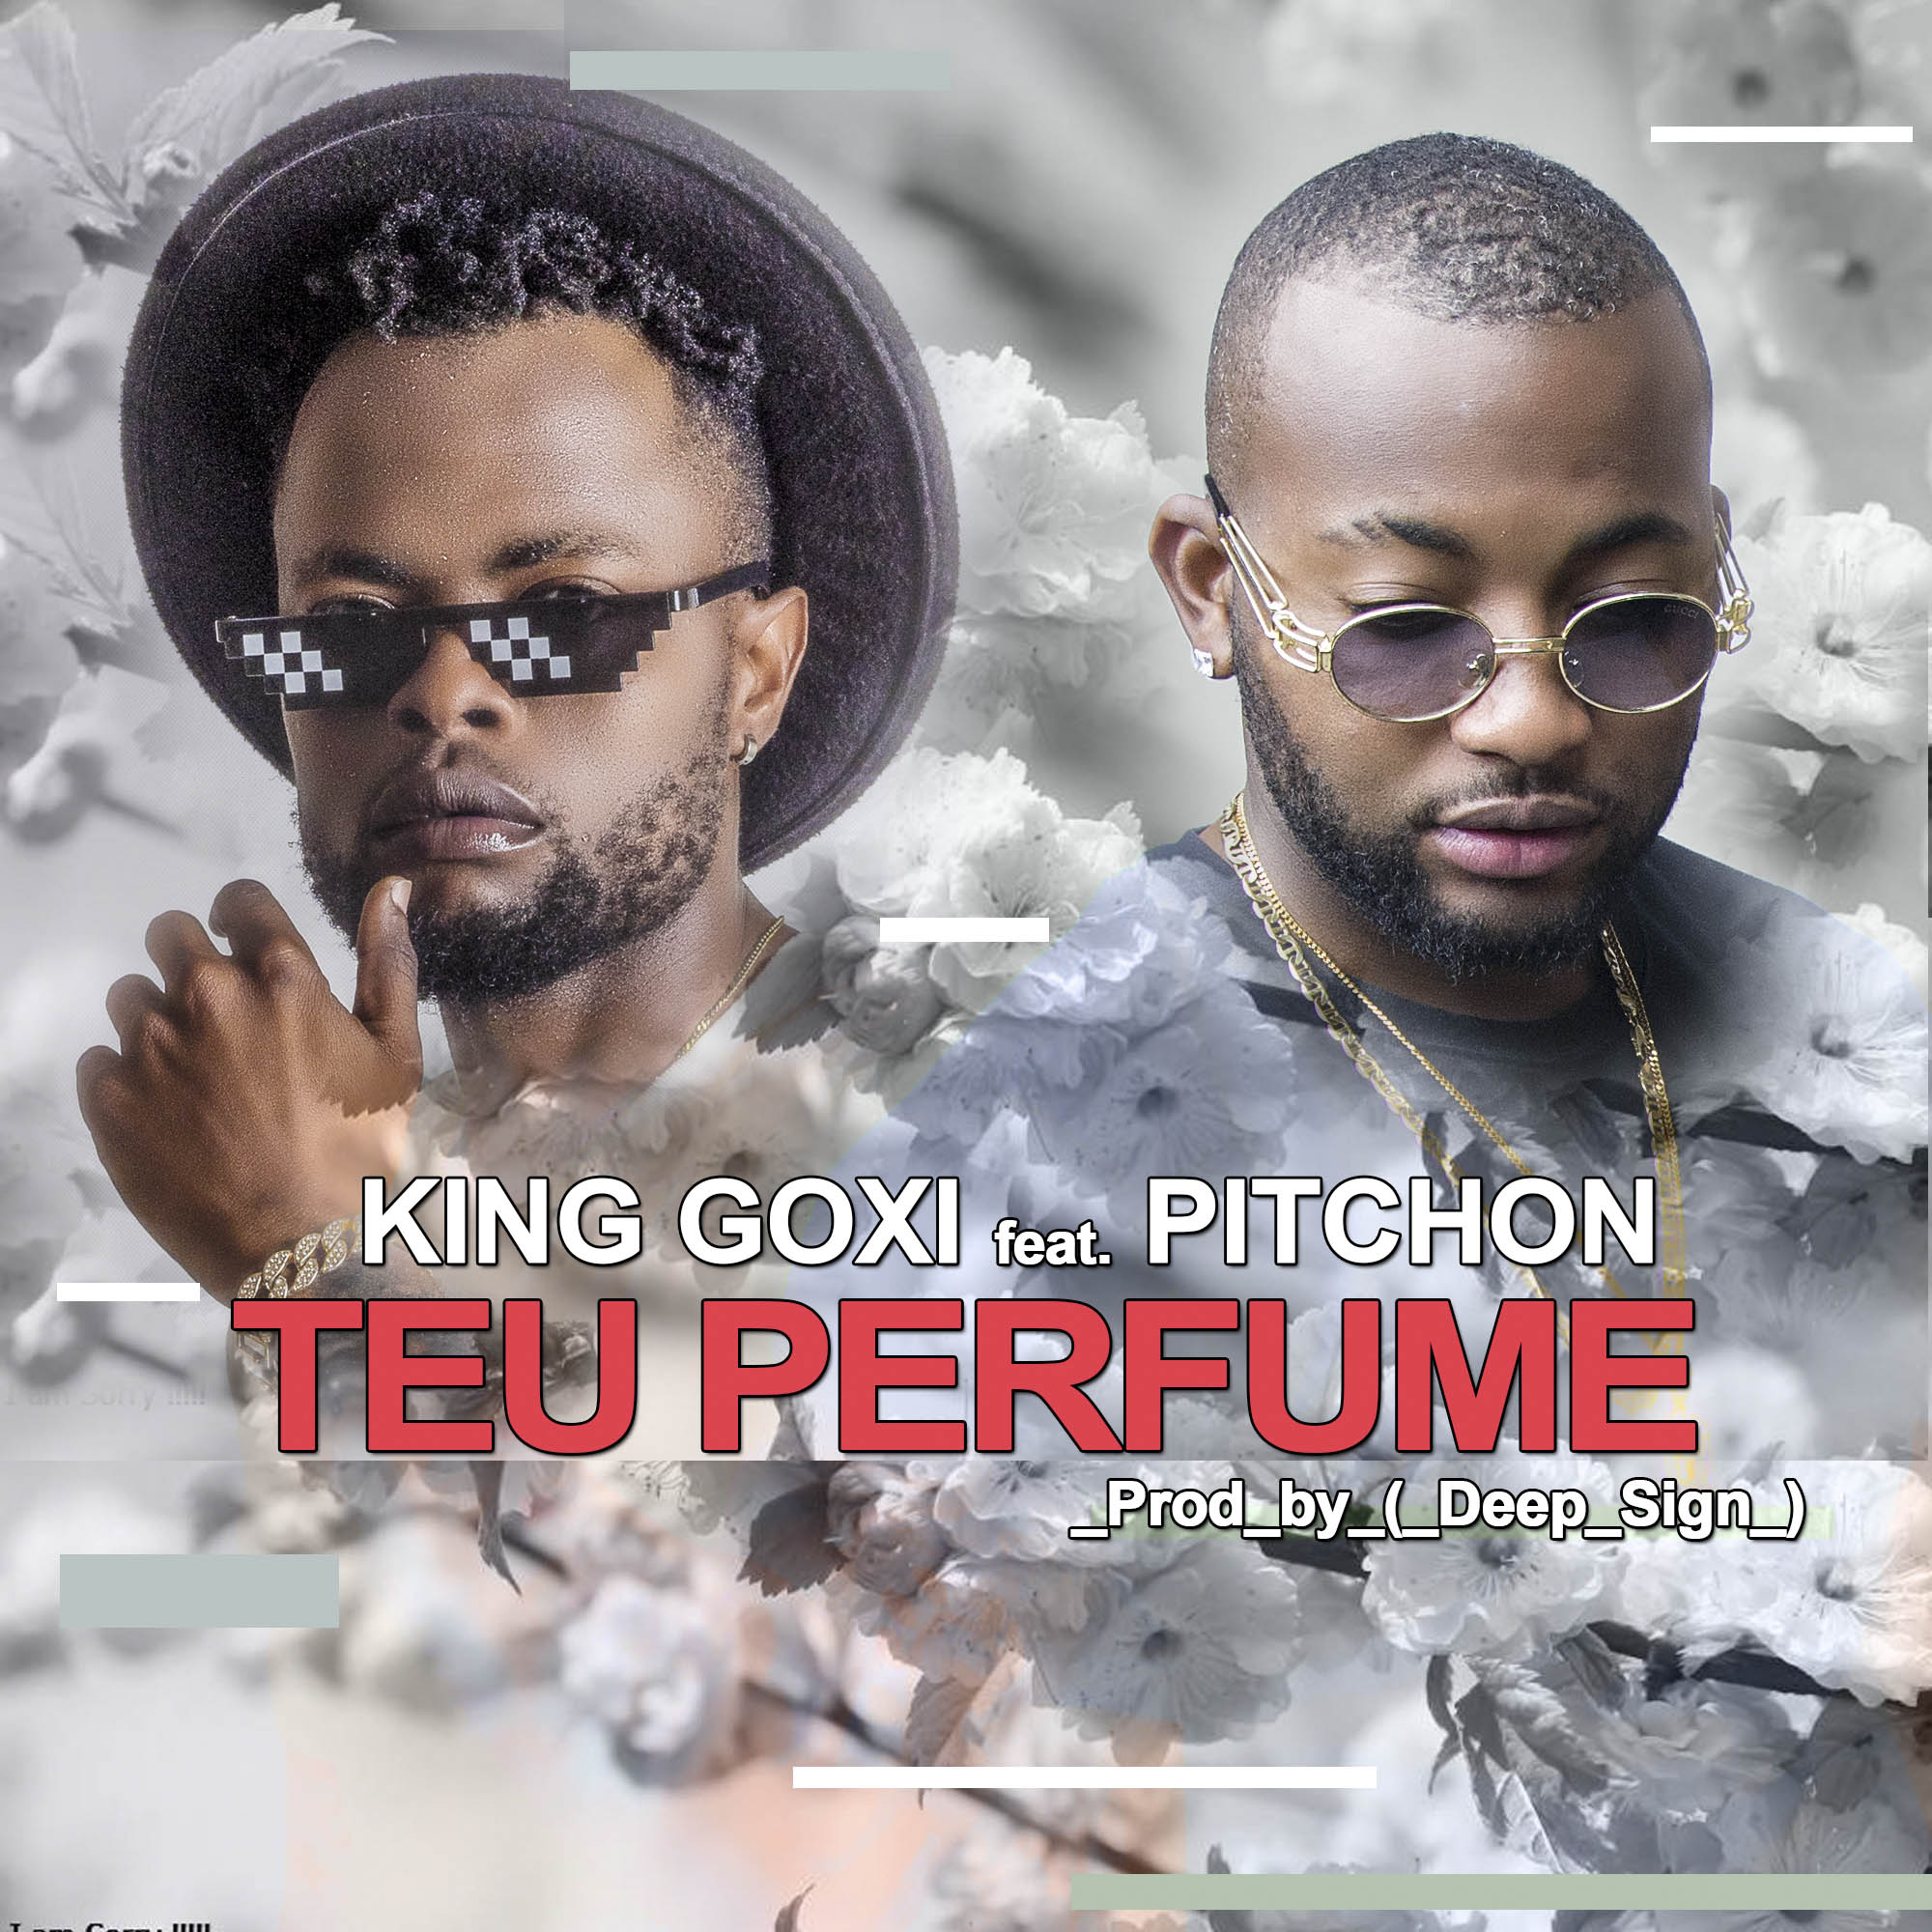 King Goxi - Teu Perfume ft Pitchon